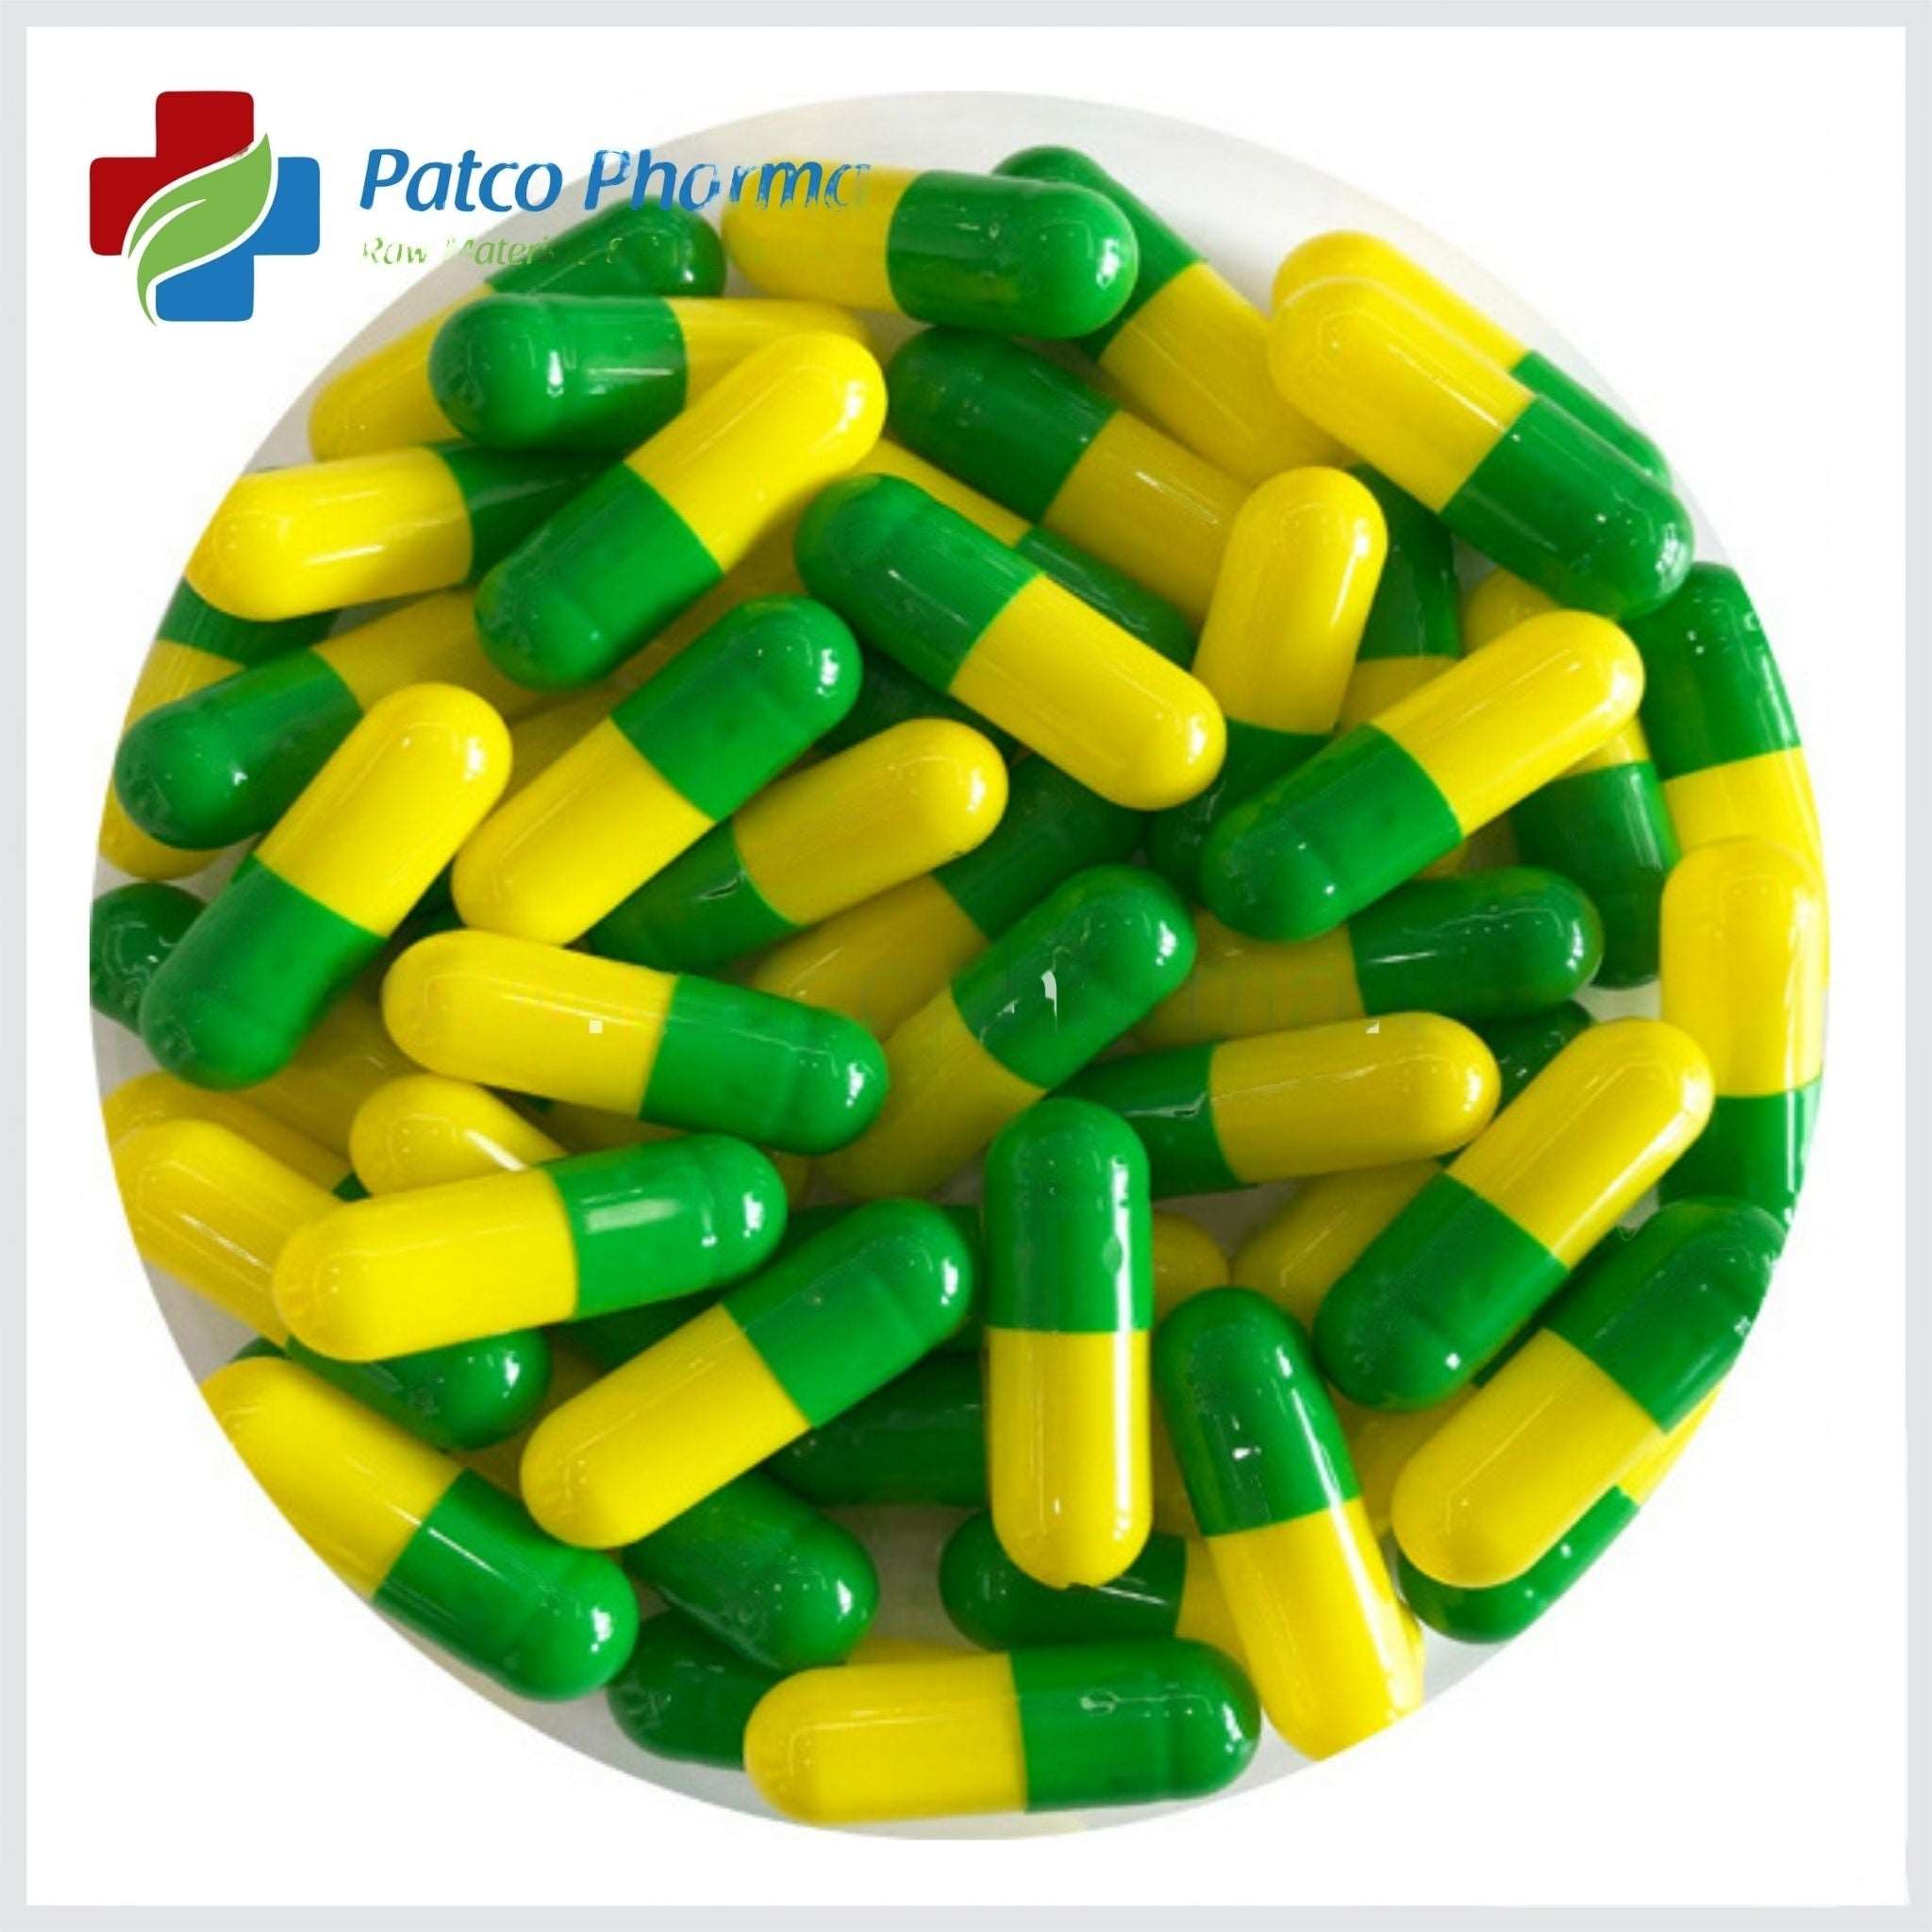 Size 00 Green/Yellow Empty Gelatin Capsule, Patco Pharma, Gelatin Capsules, size-00-green-yellow-empty-gelatin-capsule, "1000 mg capsule, Gelatin Capsule, Size 00 Capsule", Patco Pharma